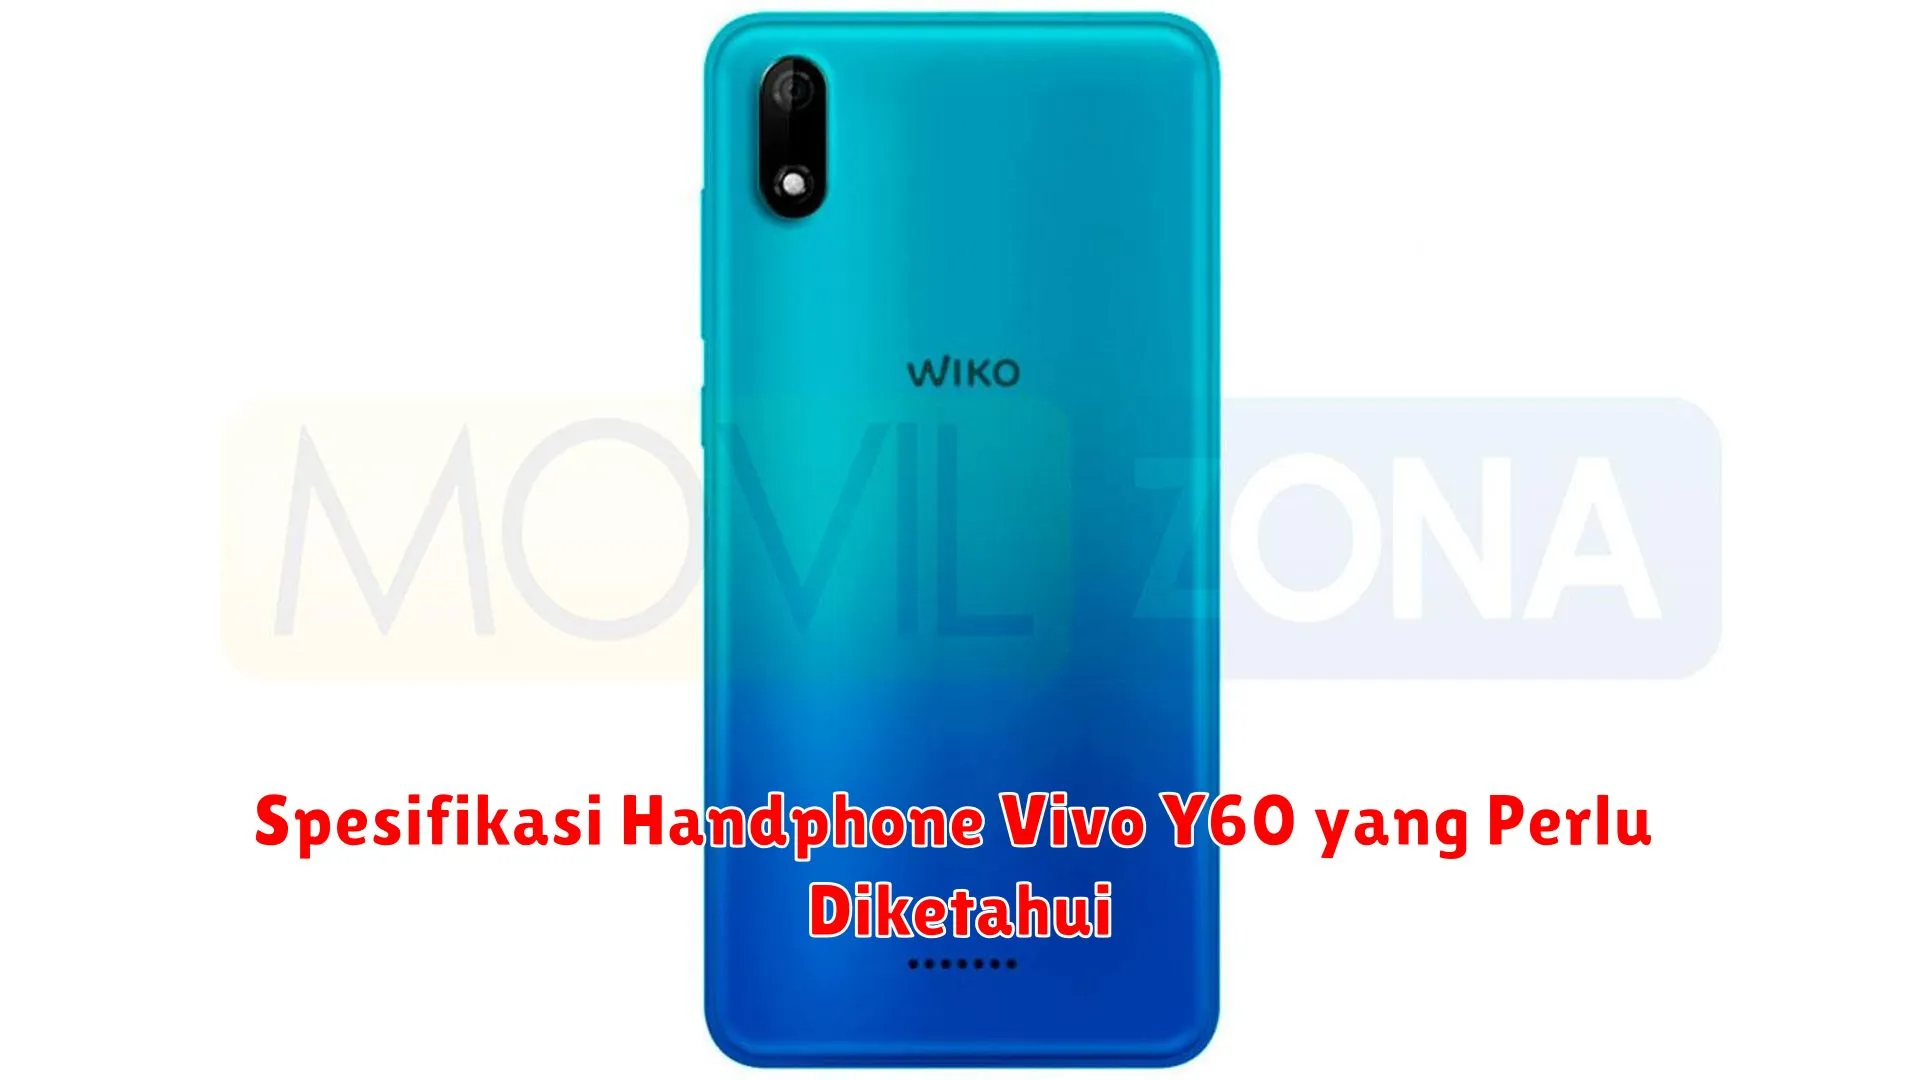 Spesifikasi Handphone Vivo Y60 yang Perlu Diketahui